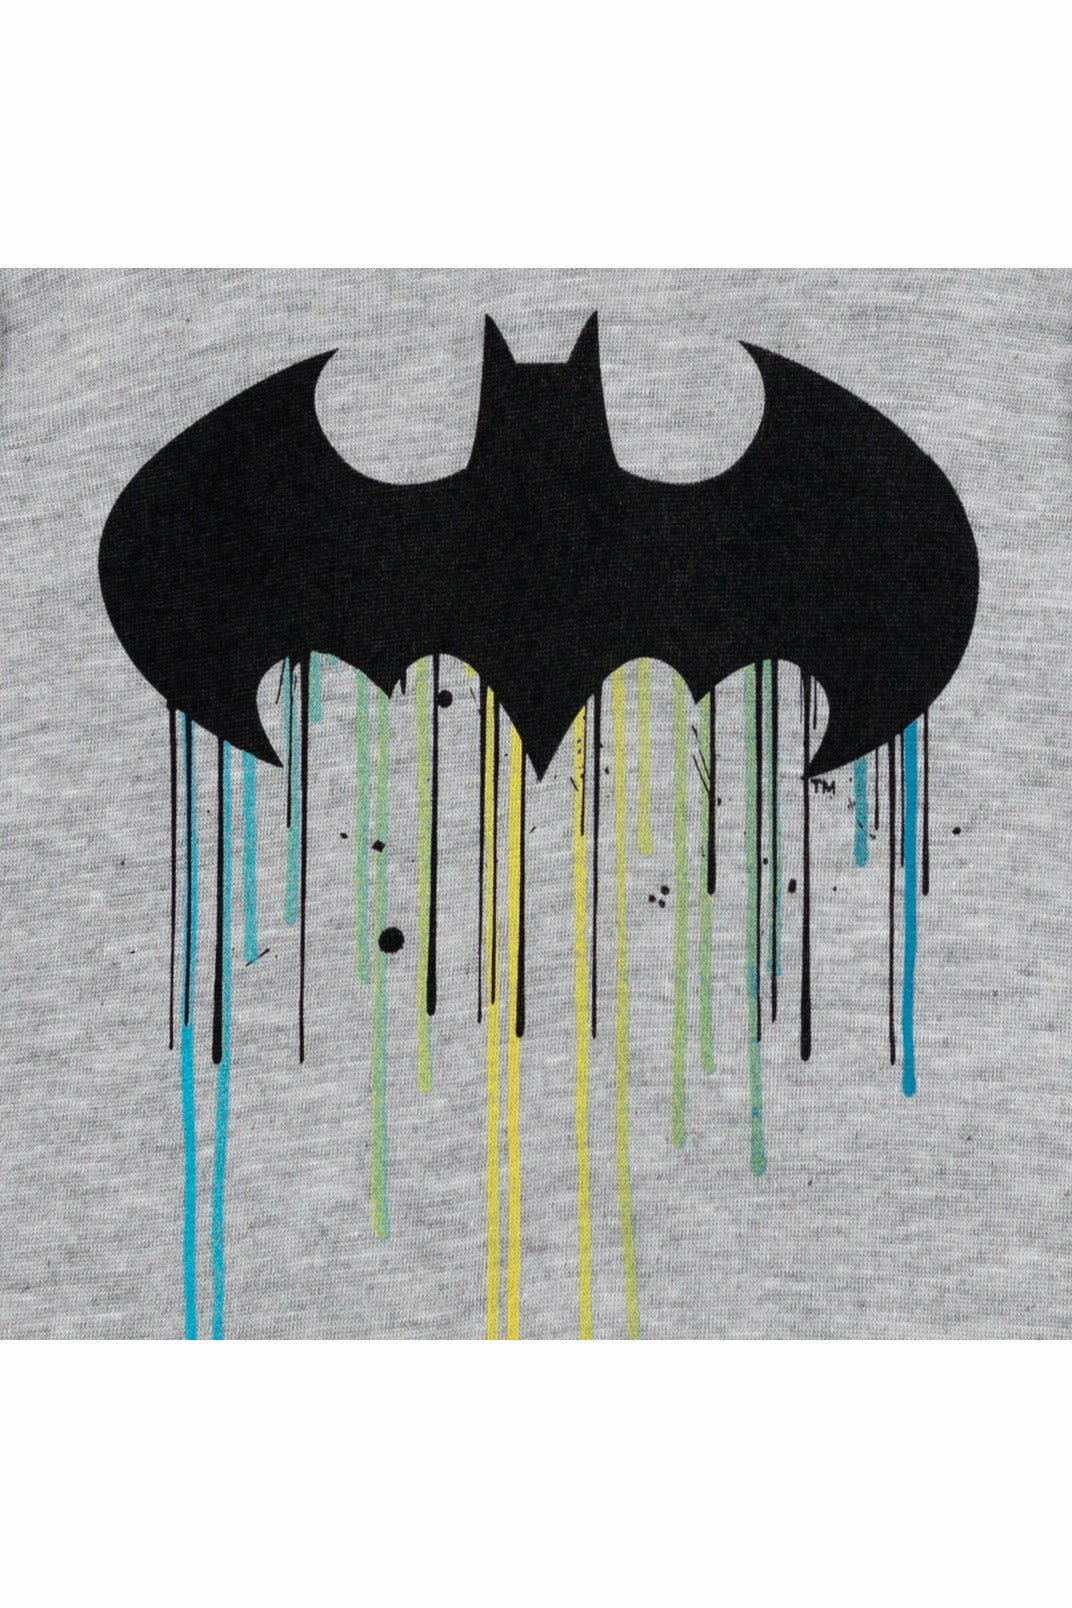 DC Comics Justice League Batman Fleece Pullover Hoodie - imagikids